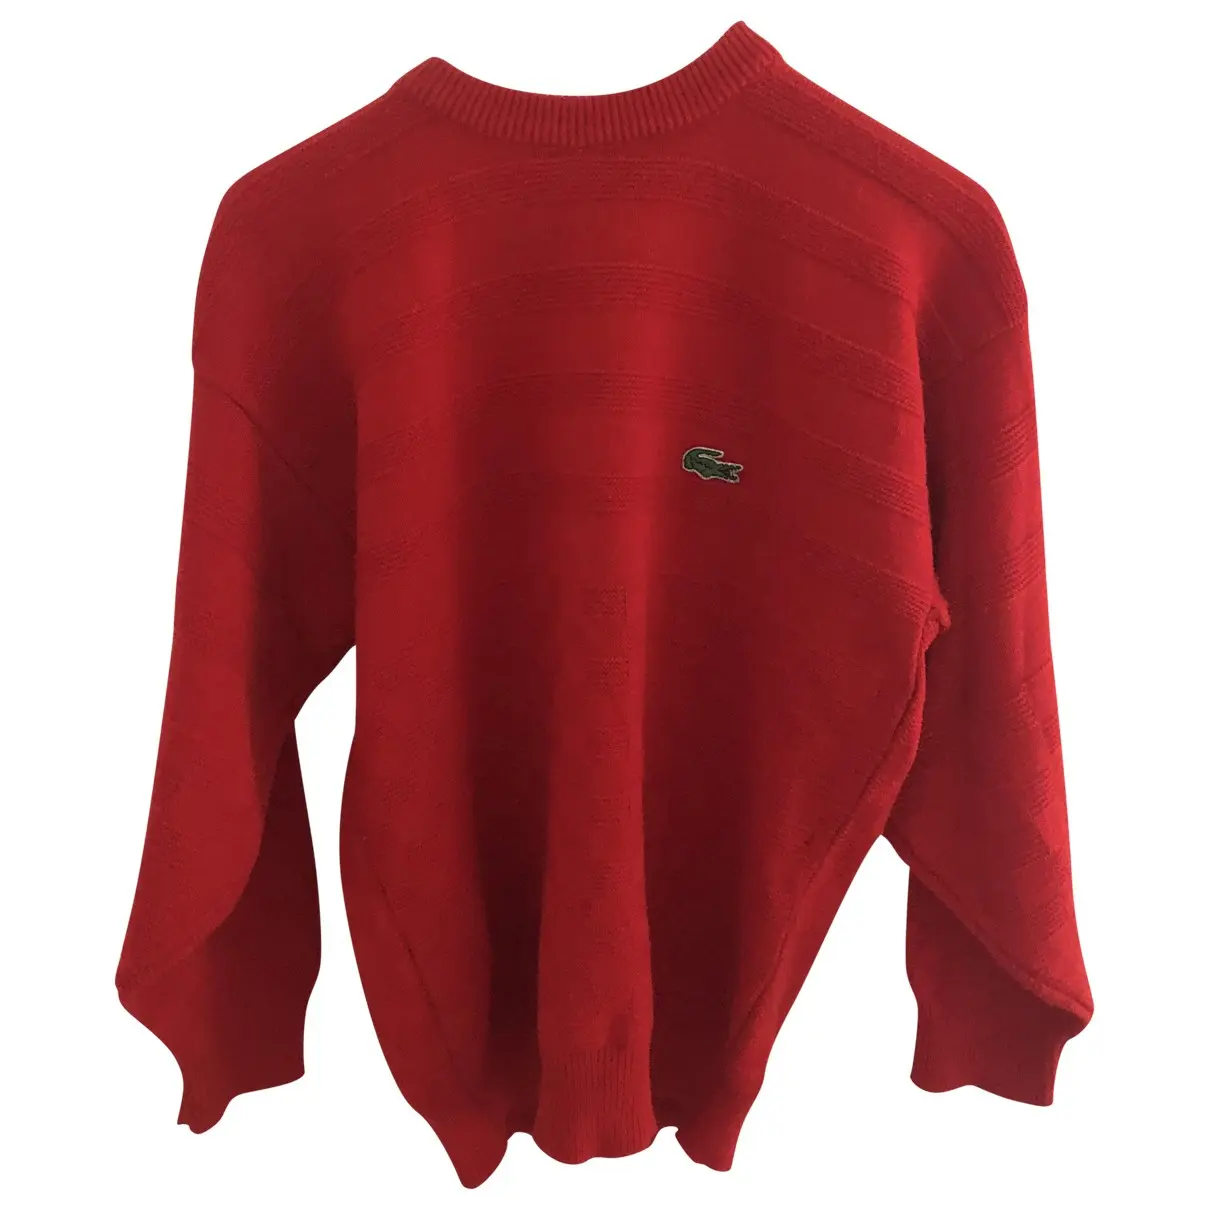 Wool sweatshirt Lacoste - Vintage